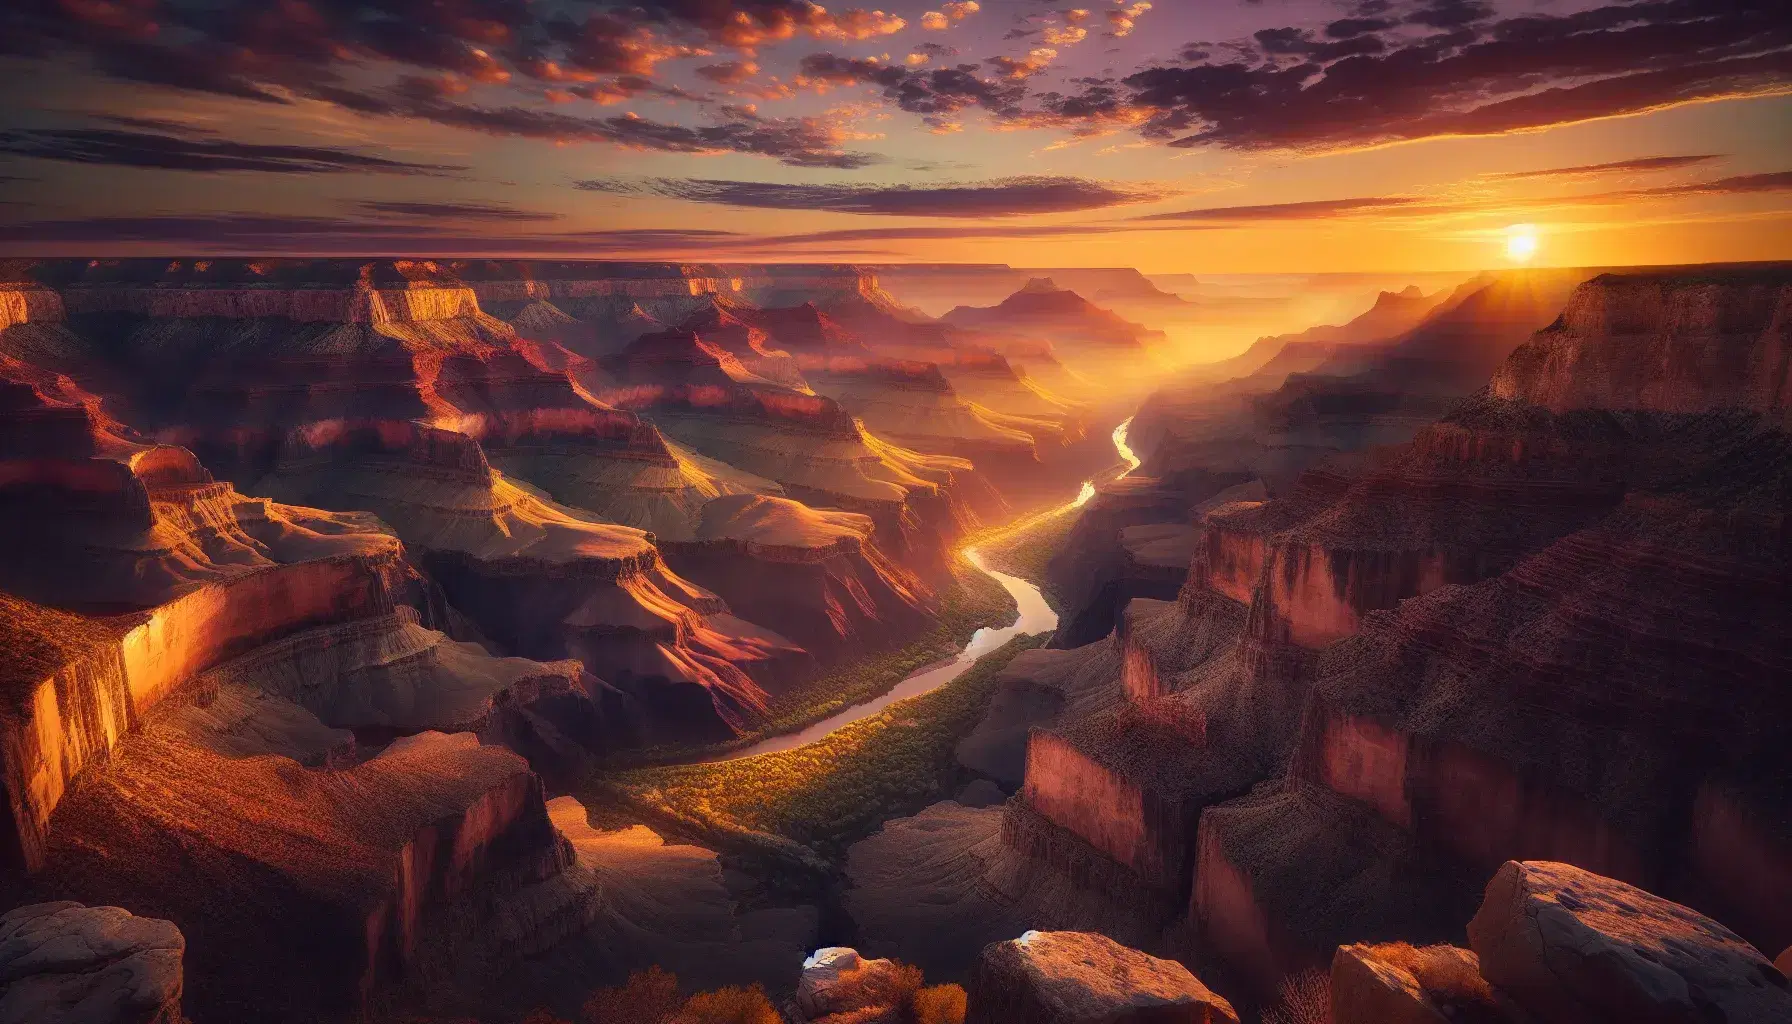 Tramonto sul Grand Canyon con cielo colorato, sole che illumina le pareti rocciose e fiume serpeggiante tra le gole.